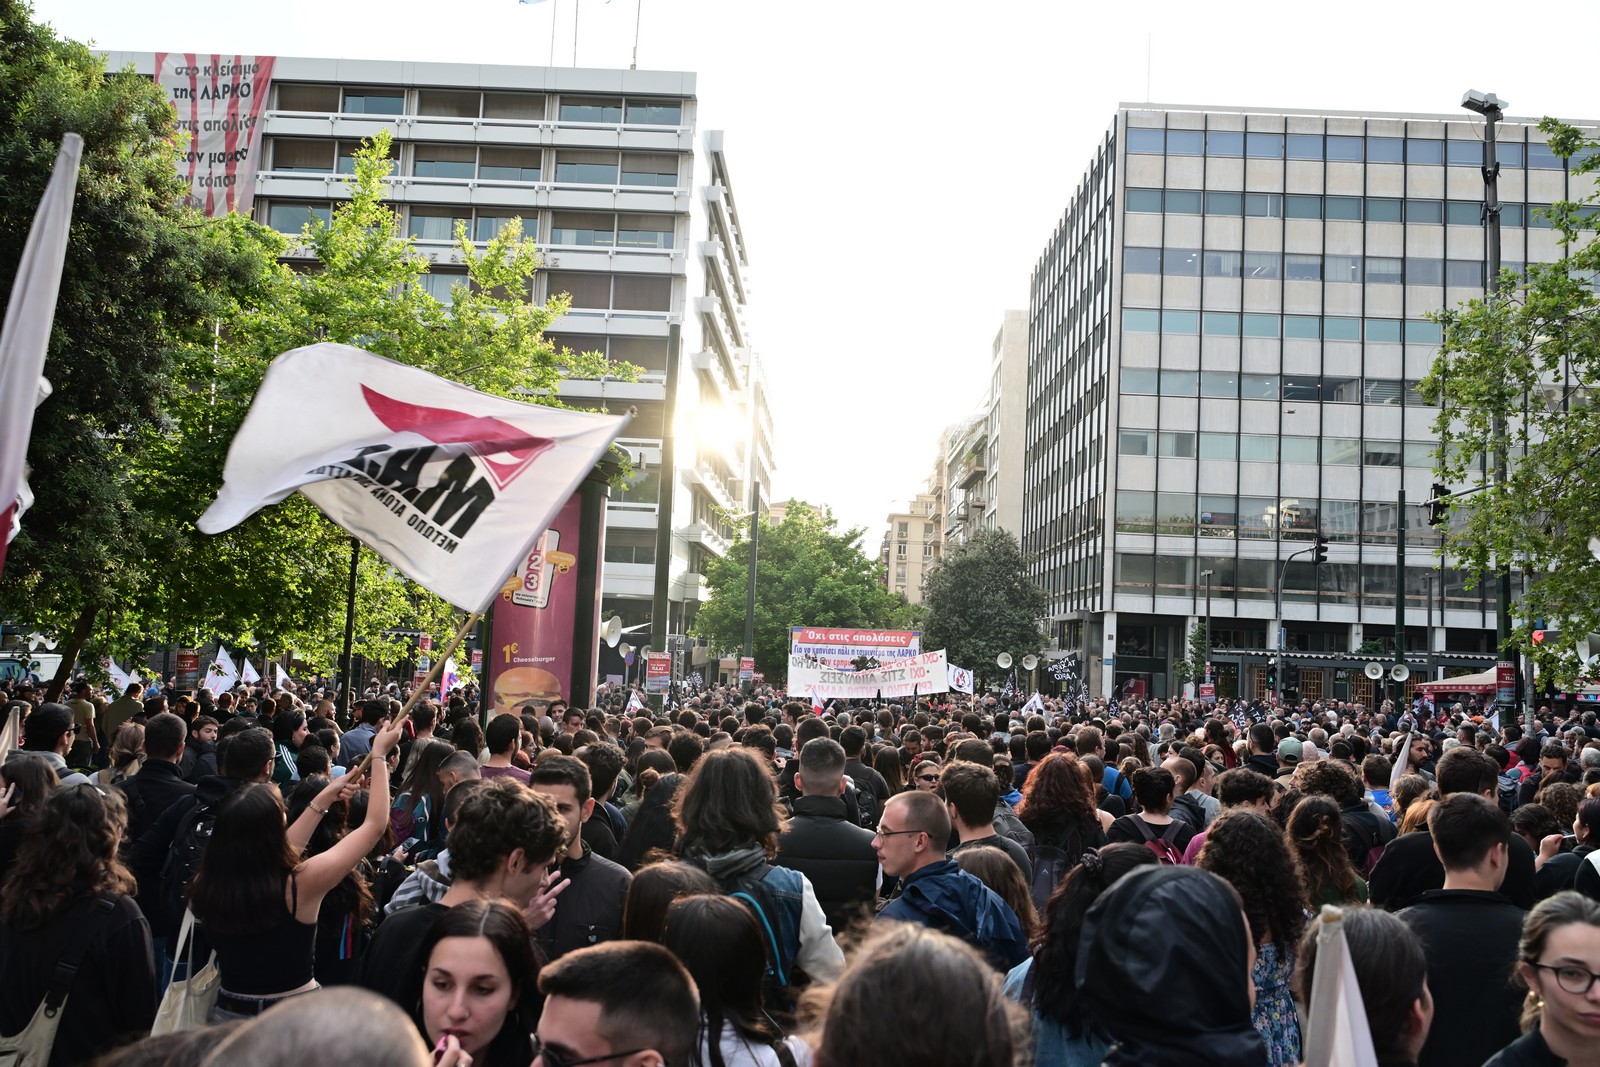 Συλλαλητήριο εργαζομένων της ΛΑΡΚΟ στην Αθήνα